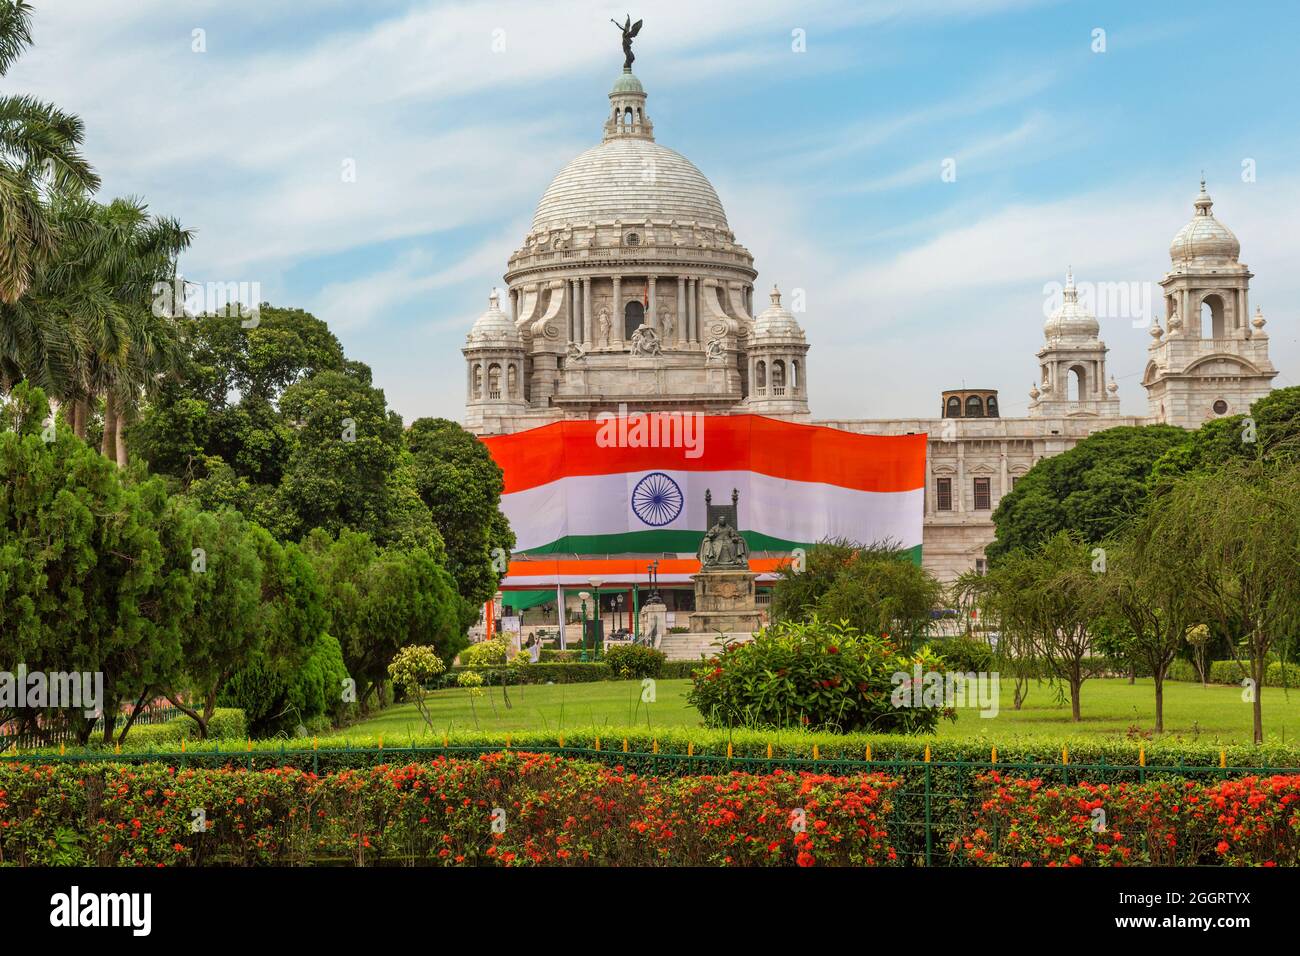 Das Victoria Memorial Denkmal in Kalkutta ist anlässlich des Unabhängigkeitstages mit einer indischen Nationalflagge geschmückt Stockfoto